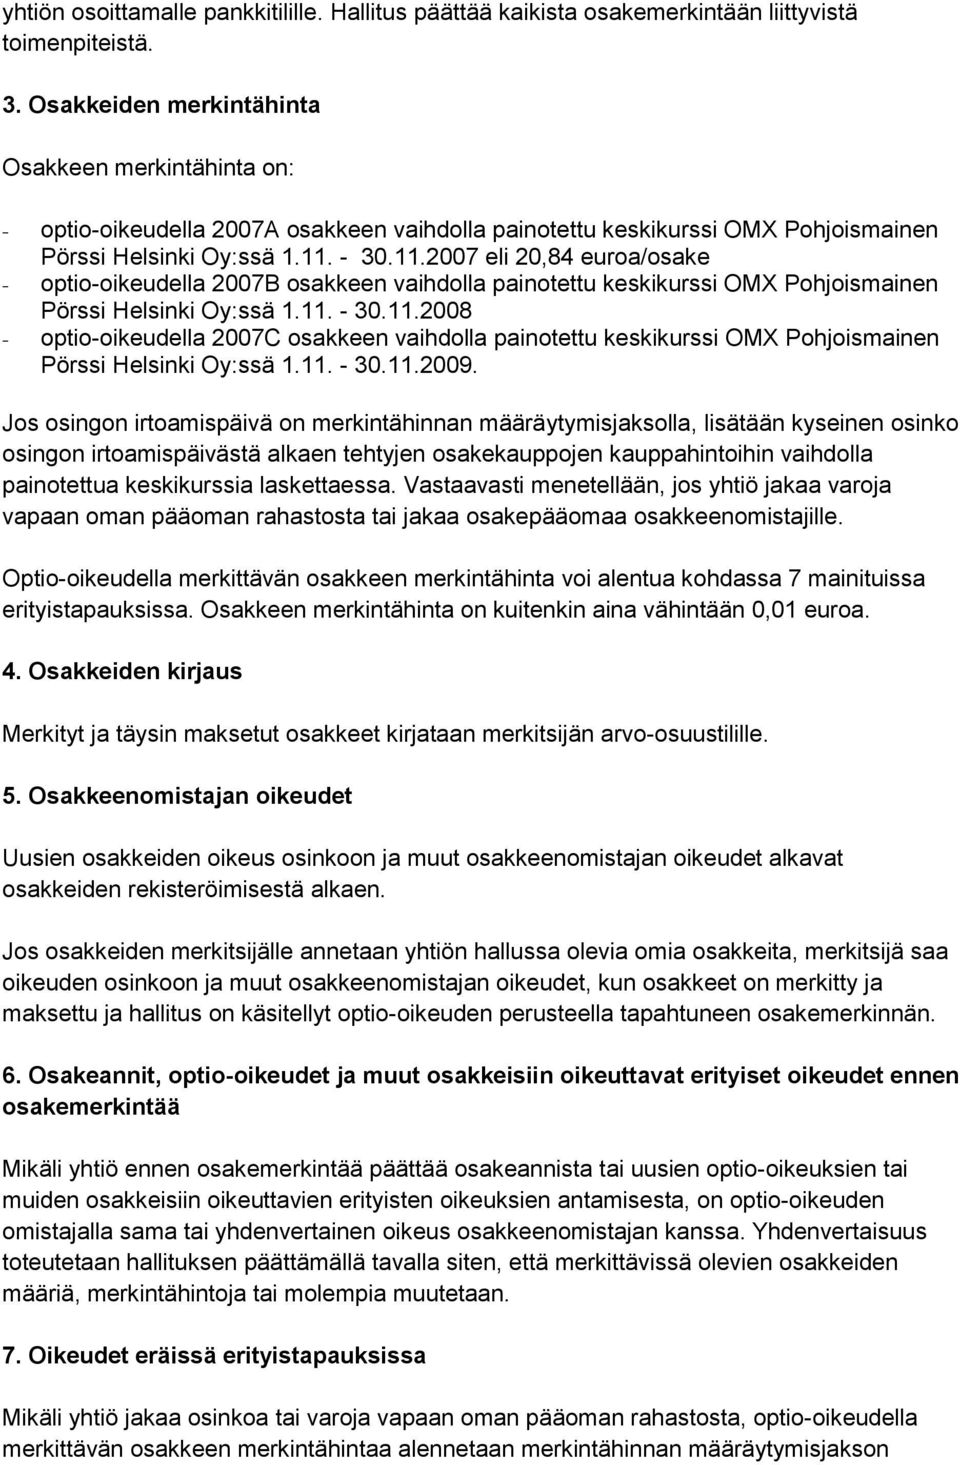 - 30.11.2007 eli 20,84 euroa/osake - optio-oikeudella 2007B osakkeen vaihdolla painotettu keskikurssi OMX Pohjoismainen Pörssi Helsinki Oy:ssä 1.11. - 30.11.2008 - optio-oikeudella 2007C osakkeen vaihdolla painotettu keskikurssi OMX Pohjoismainen Pörssi Helsinki Oy:ssä 1.